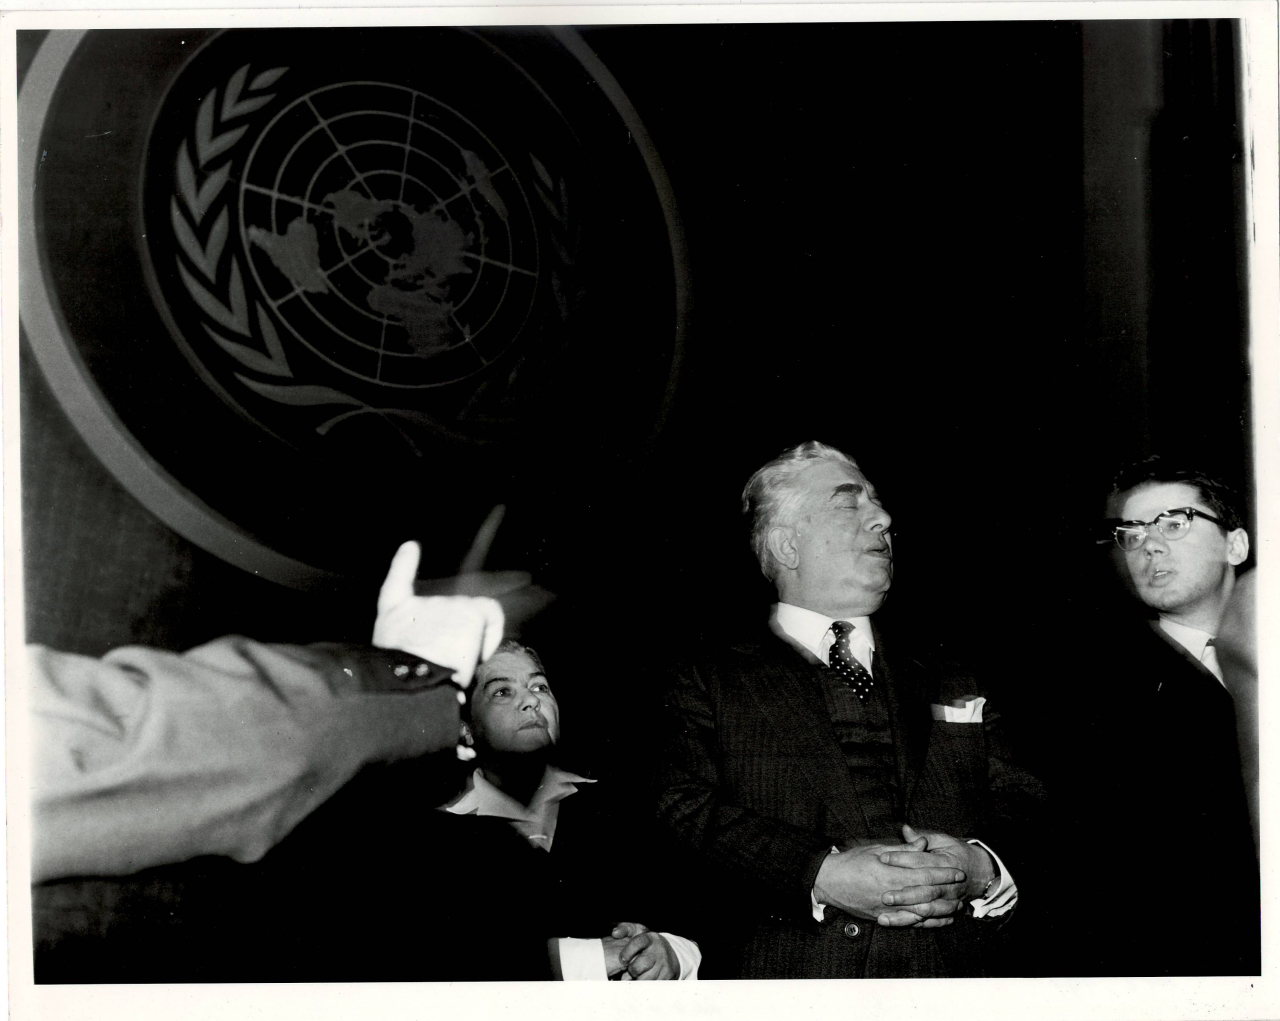 Լուսանկար. Ա. Խաչատրյանը  կնոջ ՝ Ն. Մակարովայի և որդու՝ Կարենի հետ  ՄԱԿ-ի գերագույն ասամբլեայի գլխավոր դահլիճում  